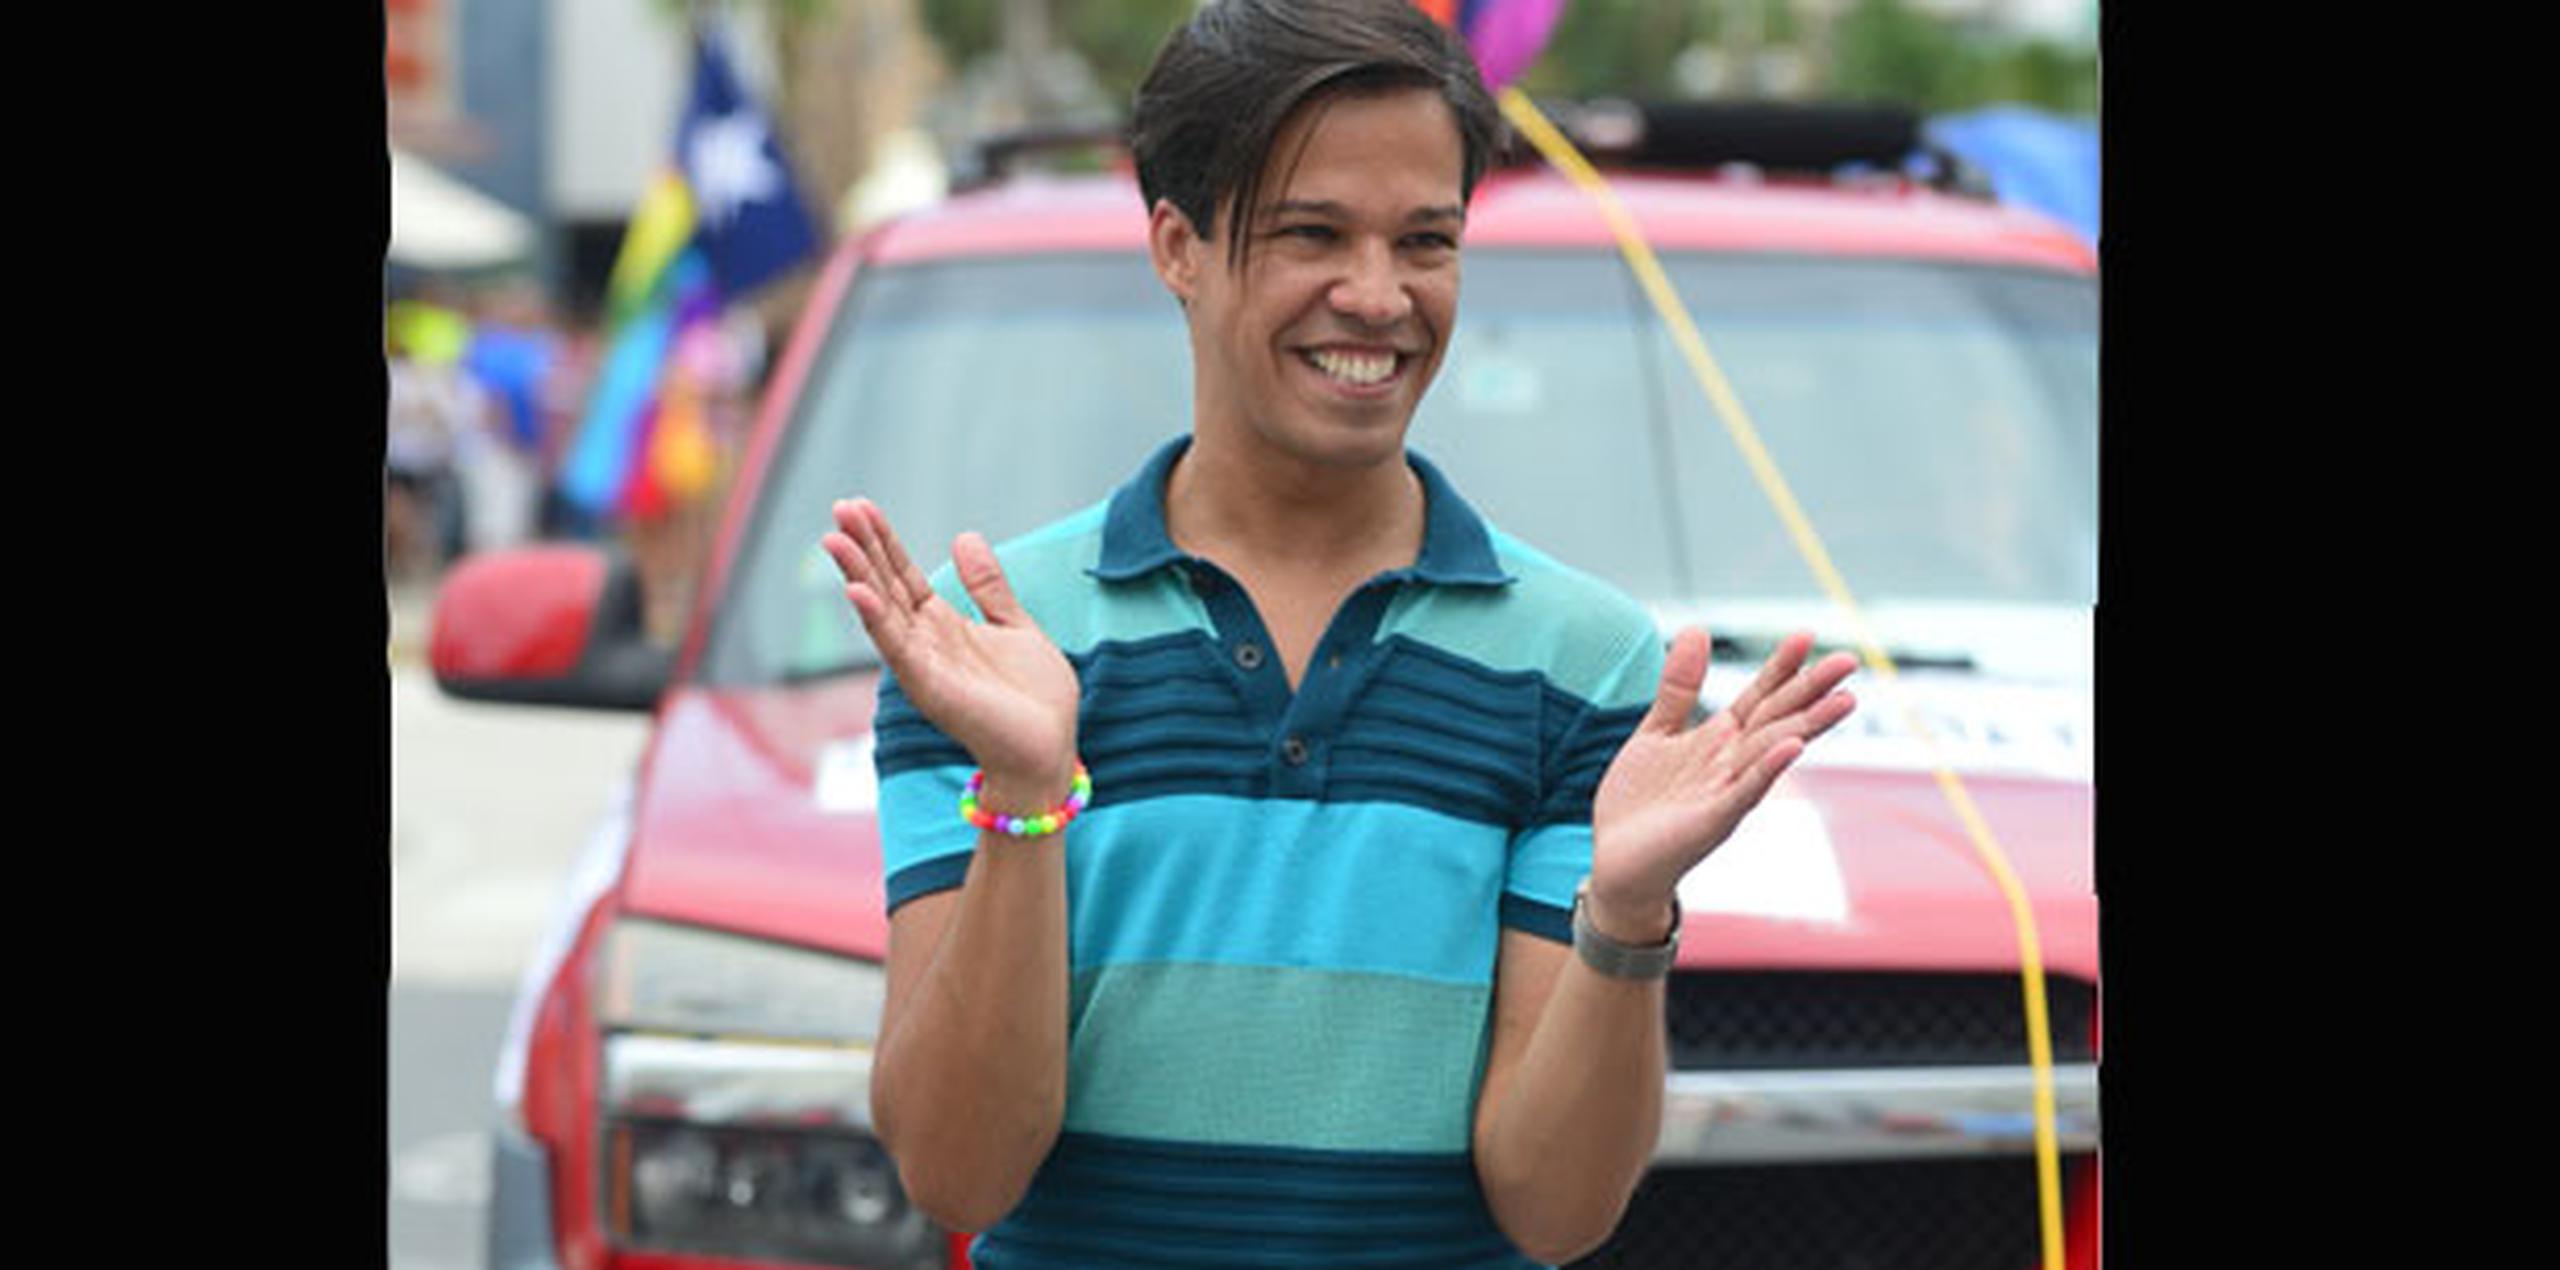 El activista boricua de los derechos para los homosexuales, Pedro Julio Serrano, indicó que “hoy es un día histórico para las personas lesbianas, gays, bisexuales, transgéneros y transexuales (Lgbtt)". (Archivo)